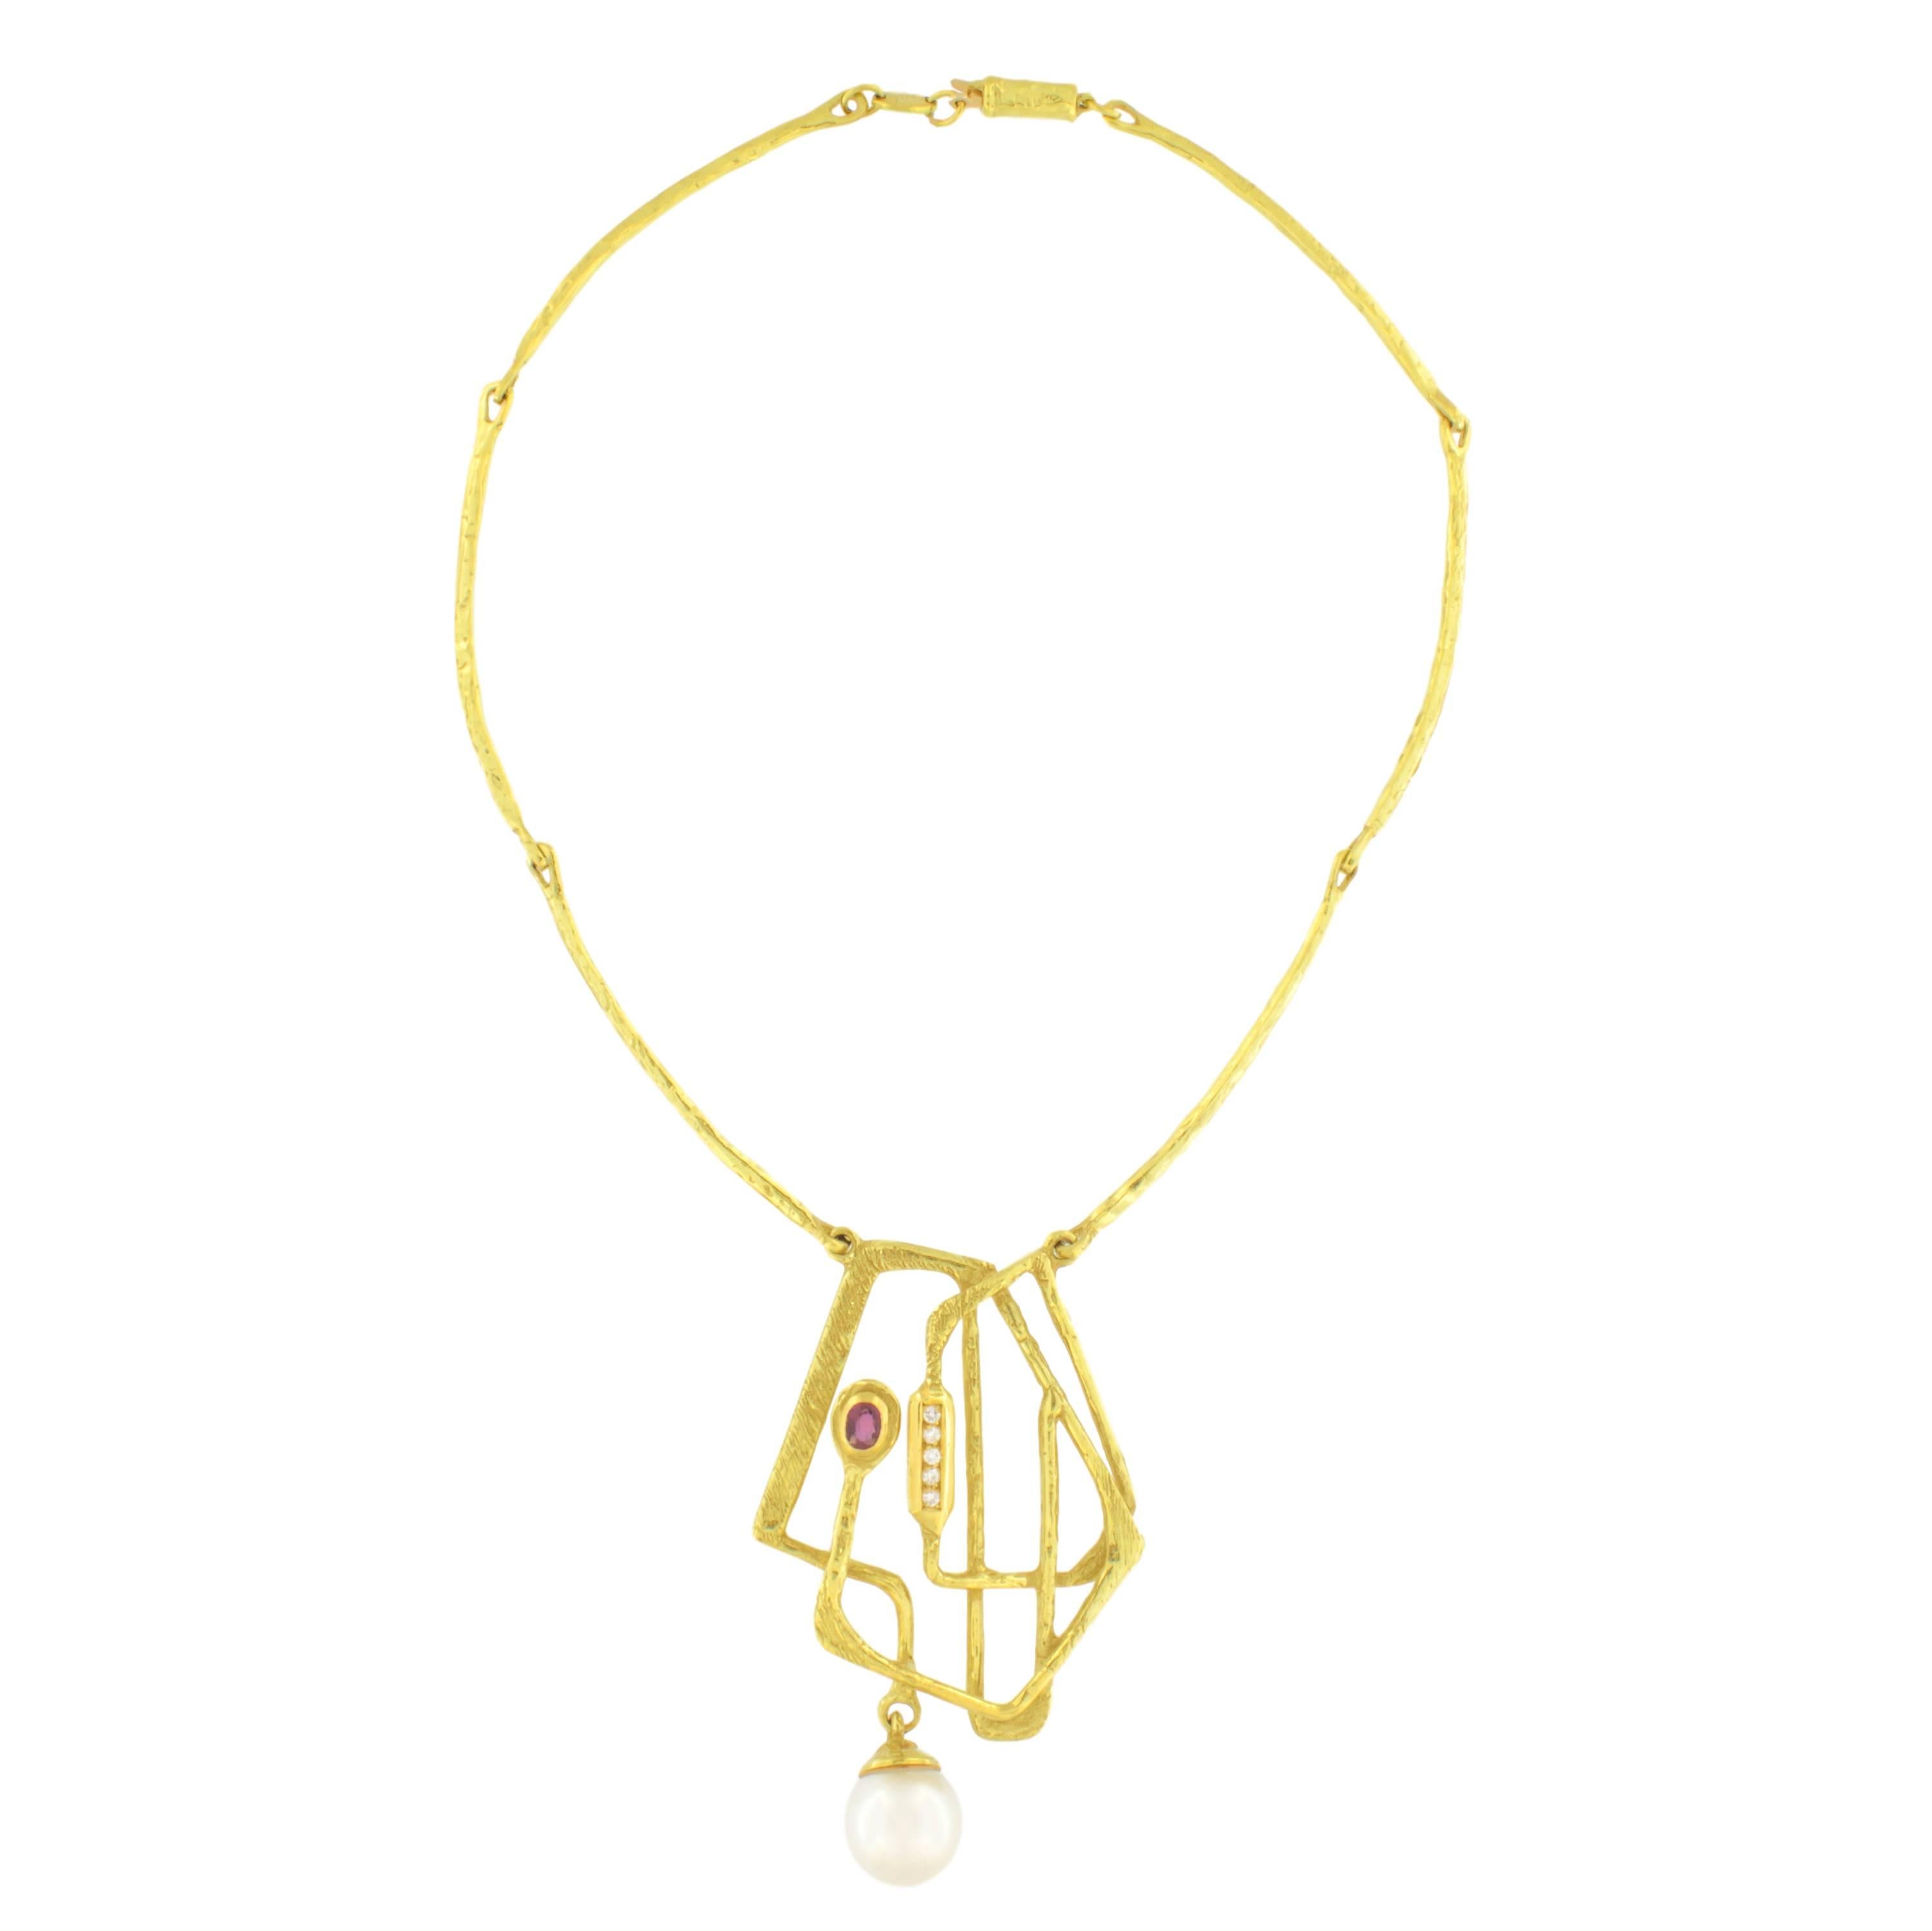 Exquisite Halskette mit Perlen, Rubinen und Diamanten aus satiniertem Gelbgold, aus der Klimt-Kollektion von Sacchi, handgefertigt im Wachsausschmelzverfahren.

Der Wachsausschmelzguss, eine der ältesten Techniken zur Herstellung von Schmuck, bildet